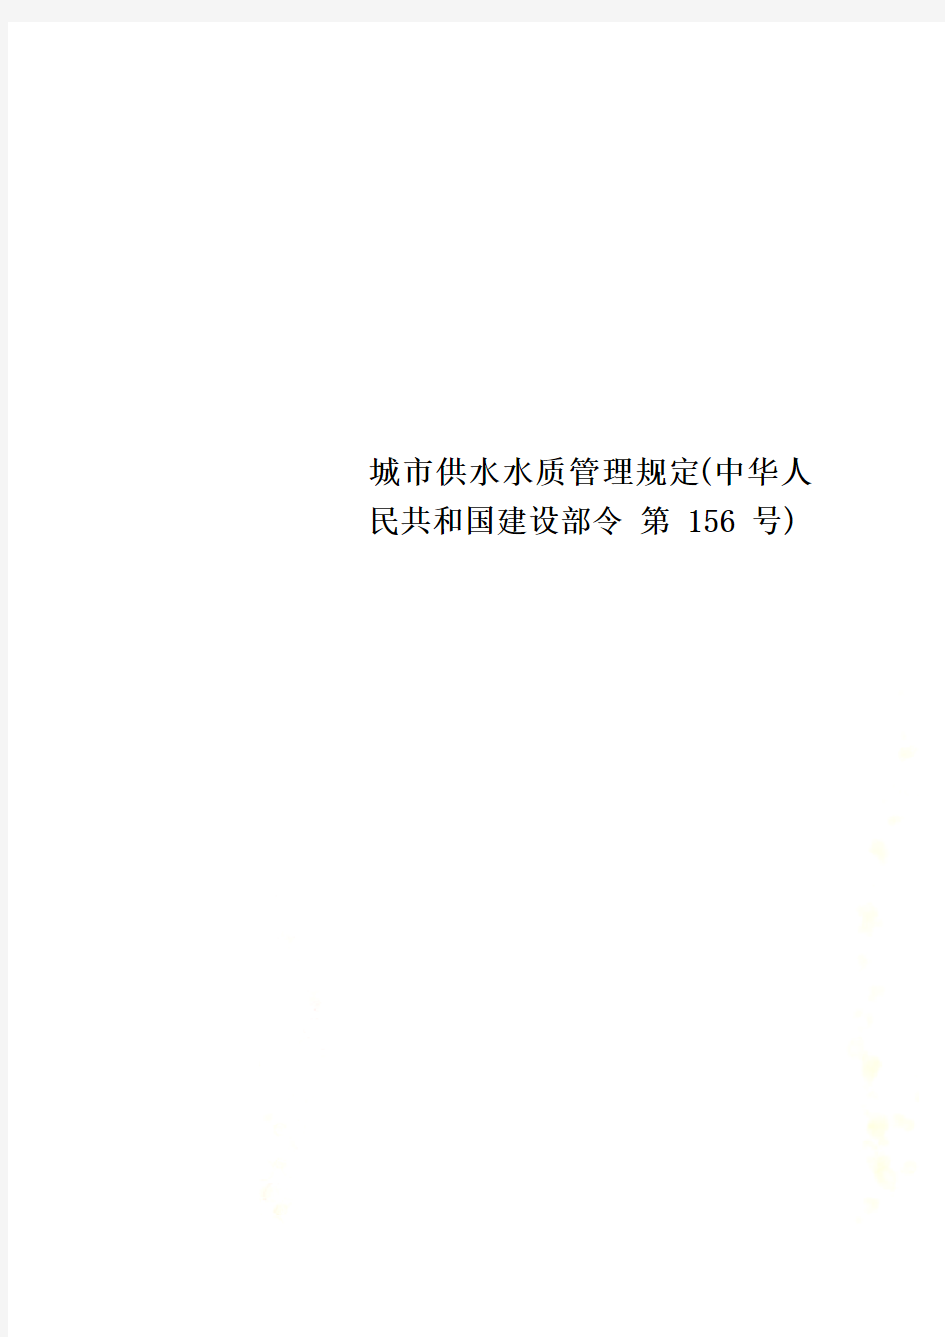 城市供水水质管理规定(中华人民共和国建设部令 第 156 号)